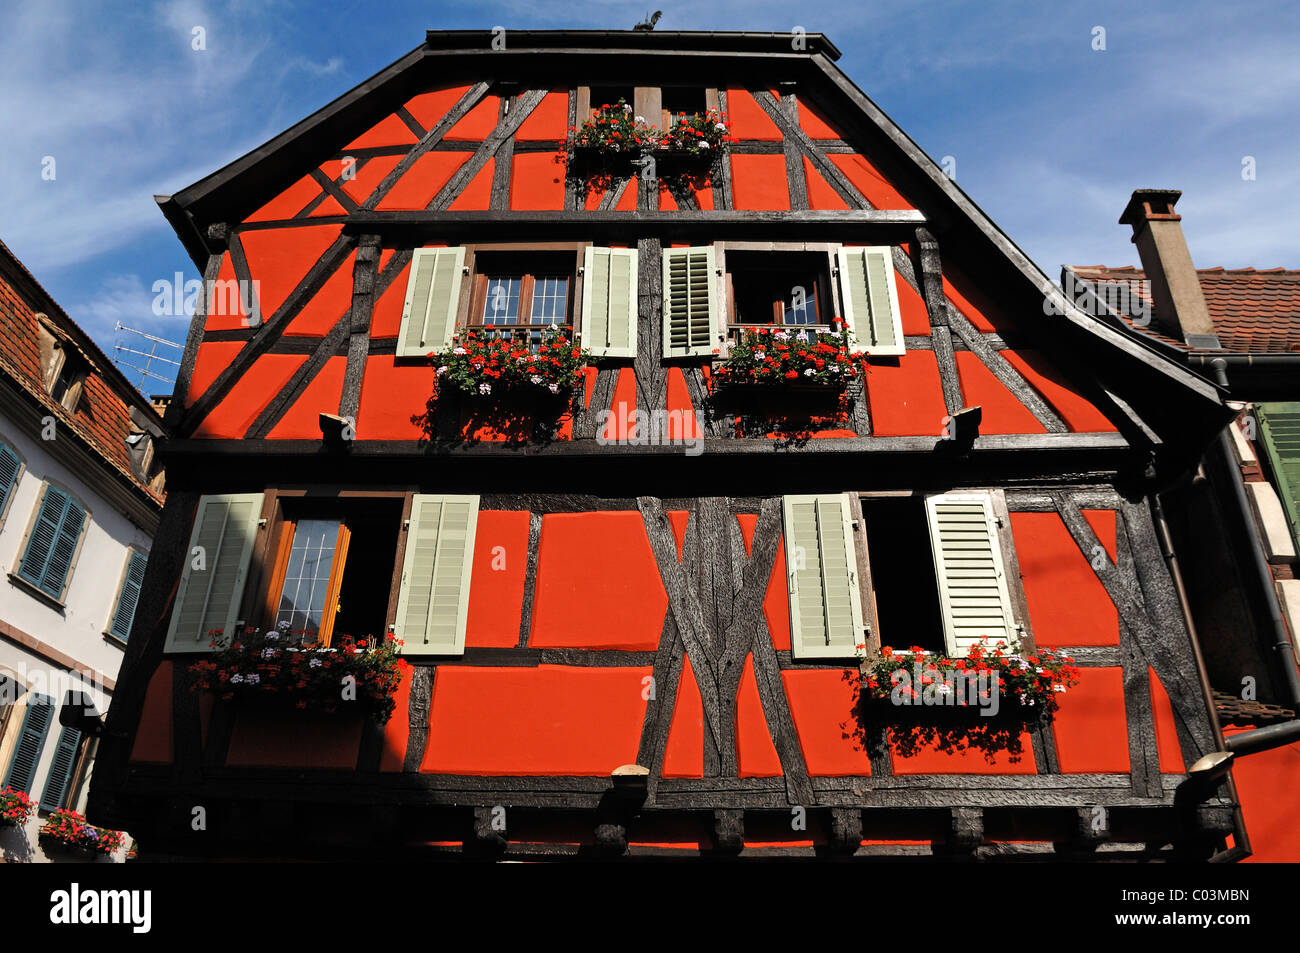 Alsacienne ancienne façade à pans de bois, 1 Rue de Juifs, Ribeauvillé, Alsace, France, Europe Banque D'Images